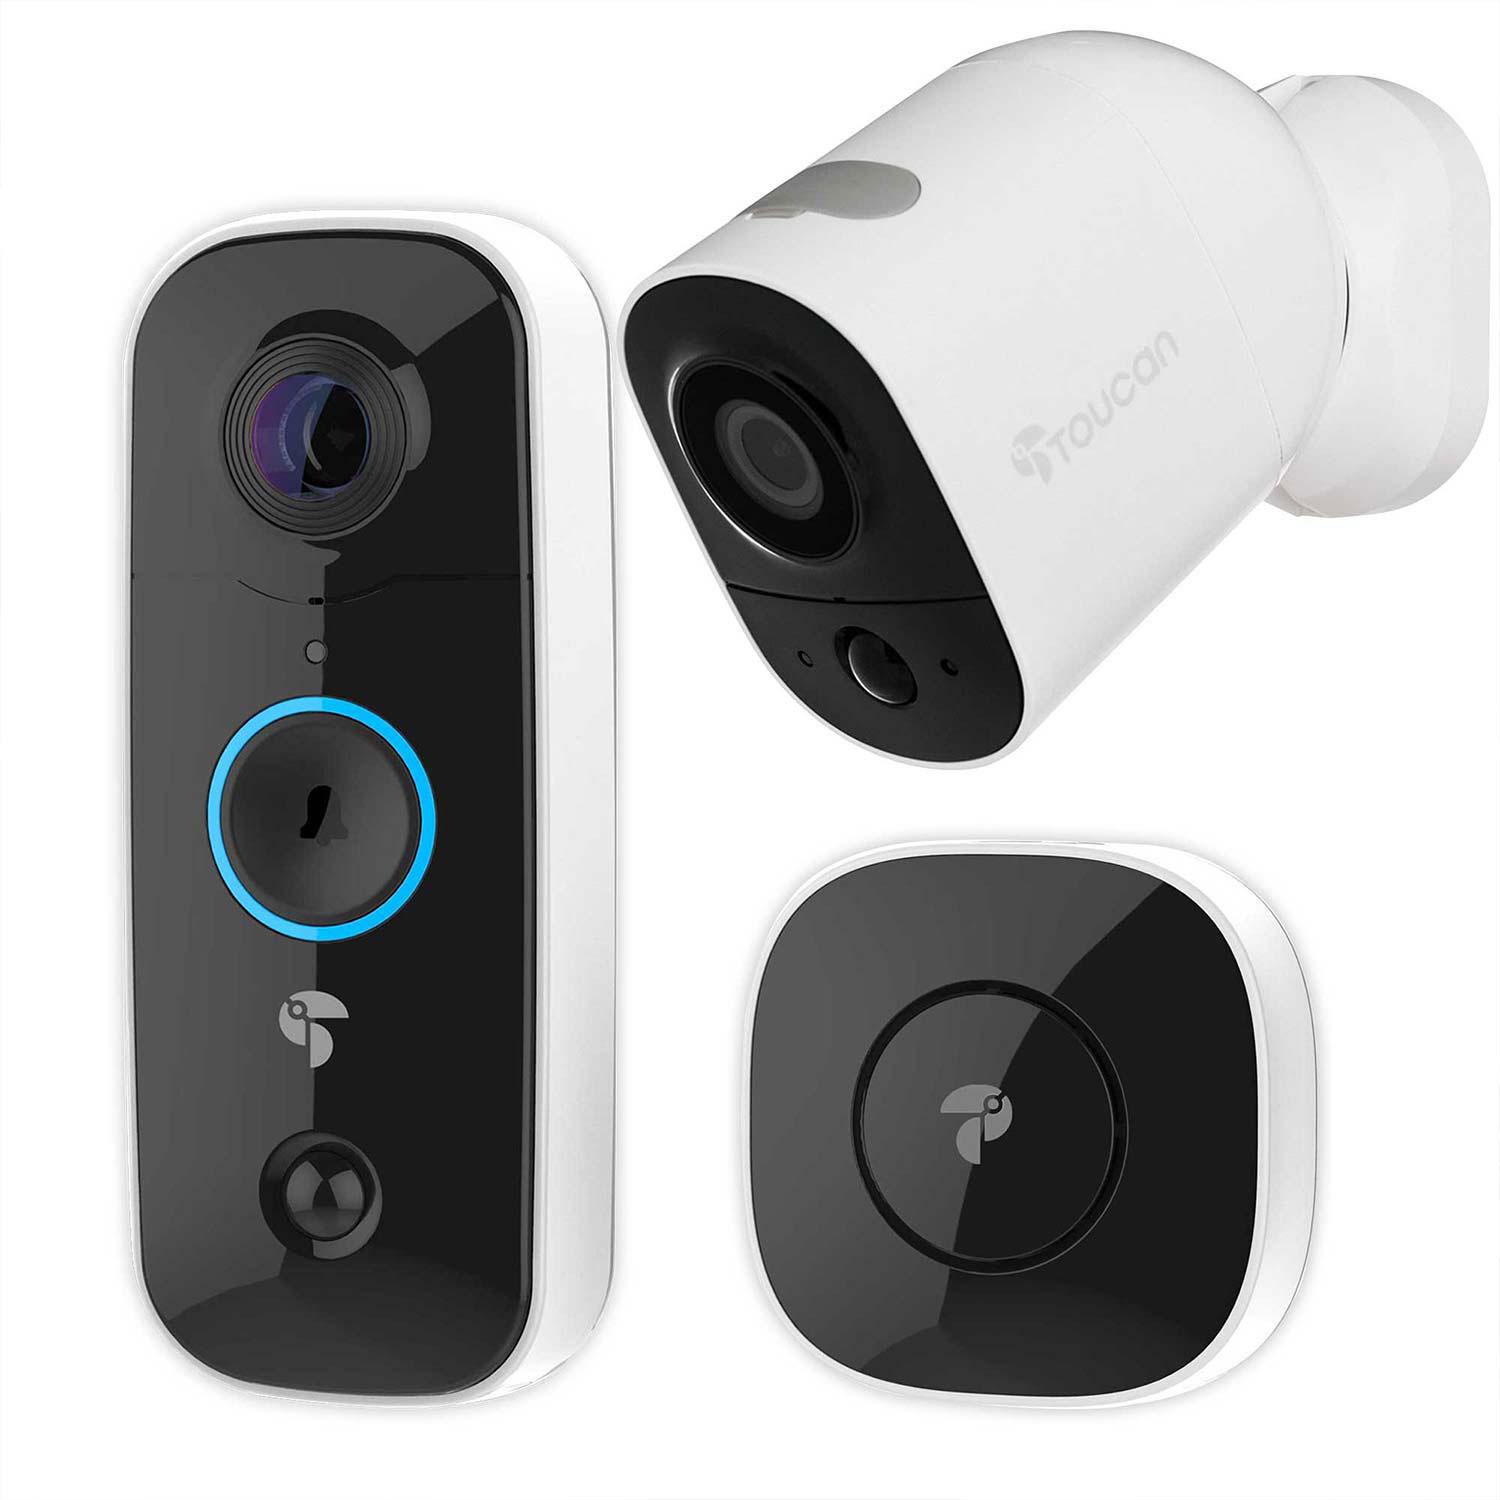 Toucan Wireless Video Doorbell + Outdoor/Indoor Surveillance Camera Bundle Pack